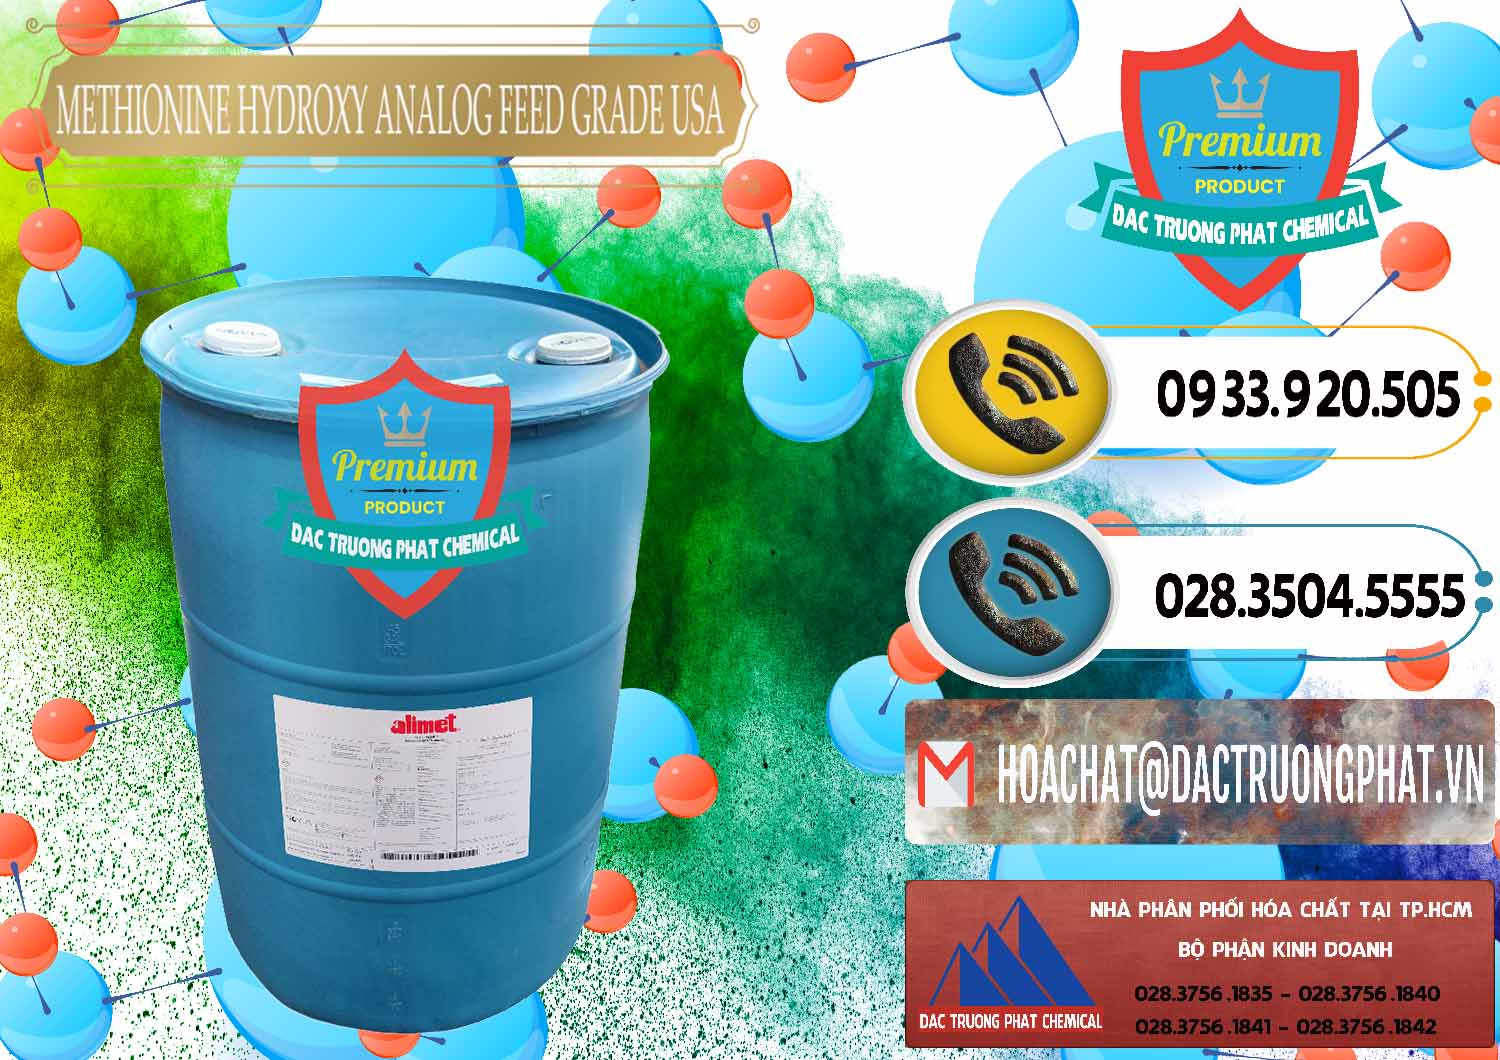 Công ty kinh doanh & bán Methionine Nước - Dạng Lỏng Novus Alimet Mỹ USA - 0316 - Nhà phân phối - cung cấp hóa chất tại TP.HCM - hoachatdetnhuom.vn